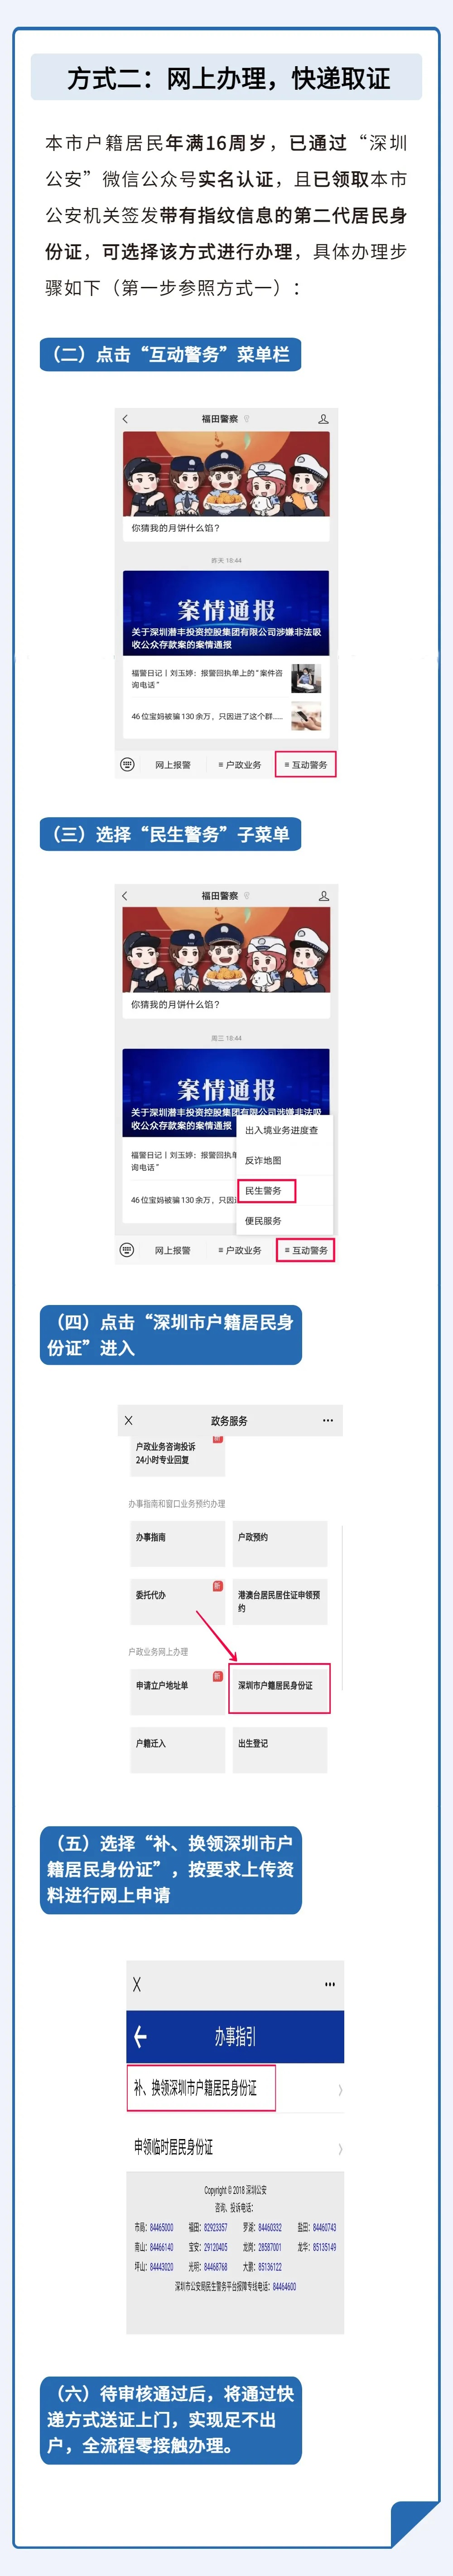 深圳户籍居民身份证办理指南(图2)